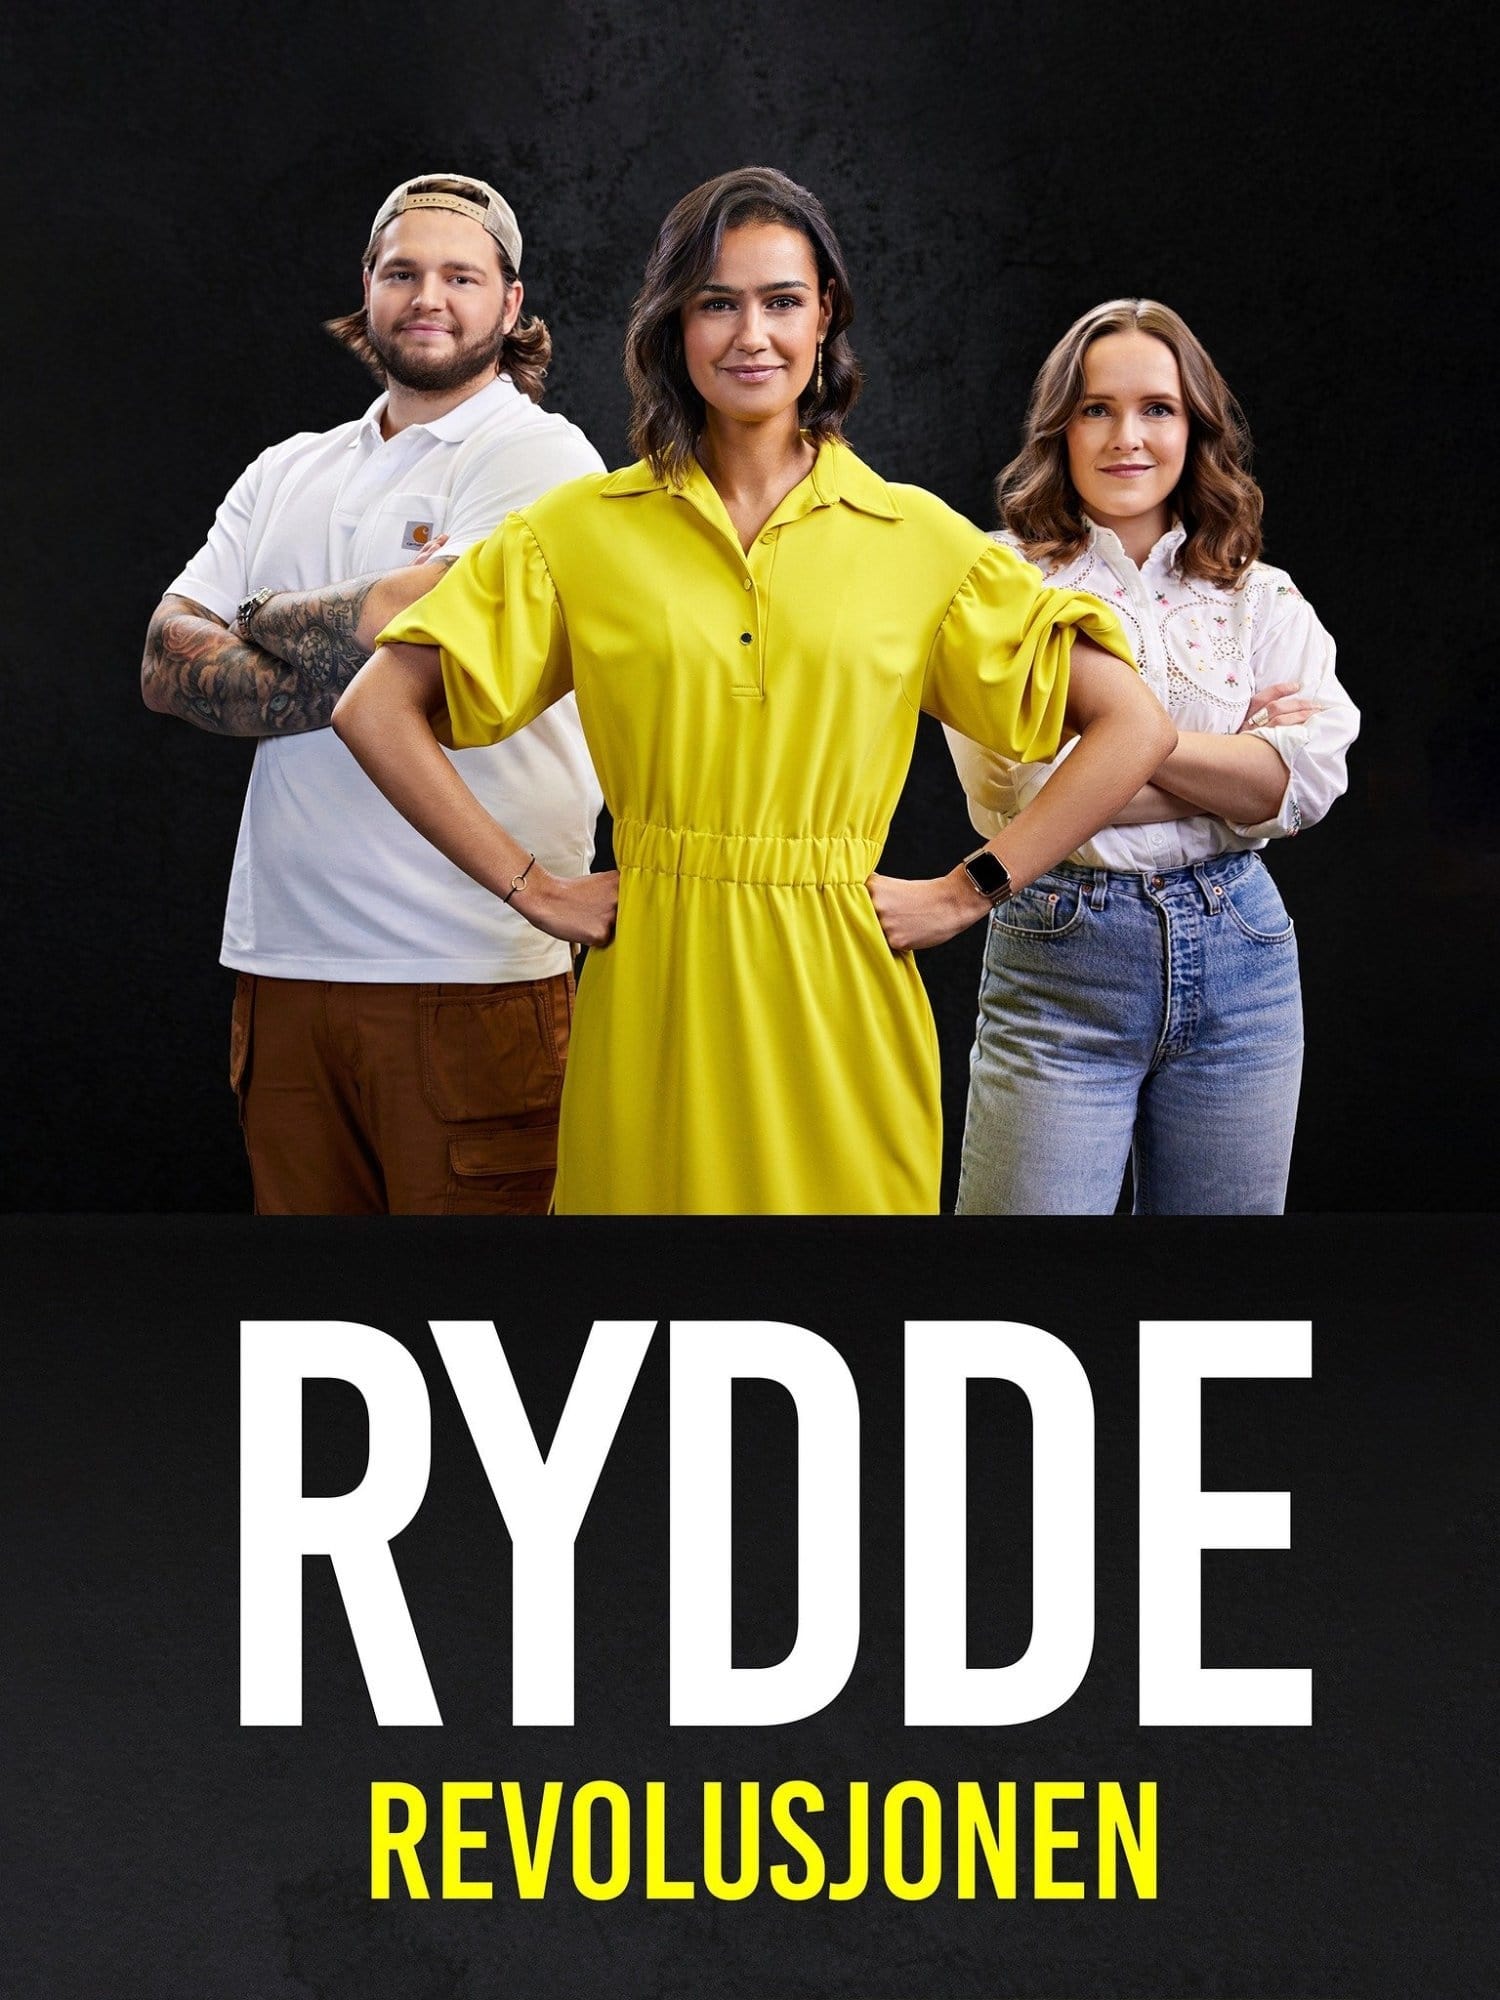 TV ratings for Rydderevolusjonen in Colombia. TV 2 Play TV series